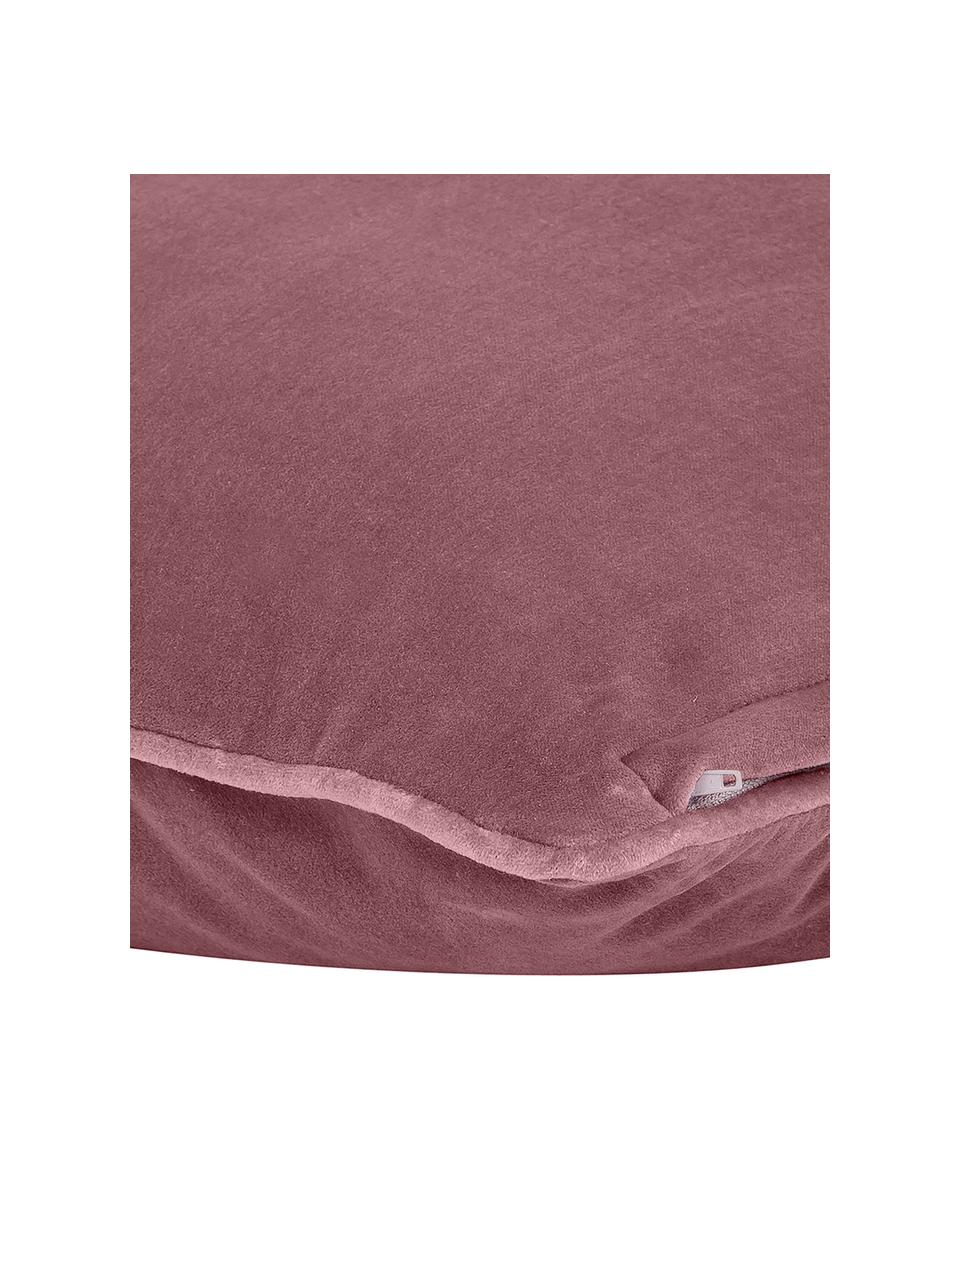 Einfarbige Samt-Kissenhülle Dana, 100% Baumwollsamt, Pastellrot, B 40 x L 40 cm